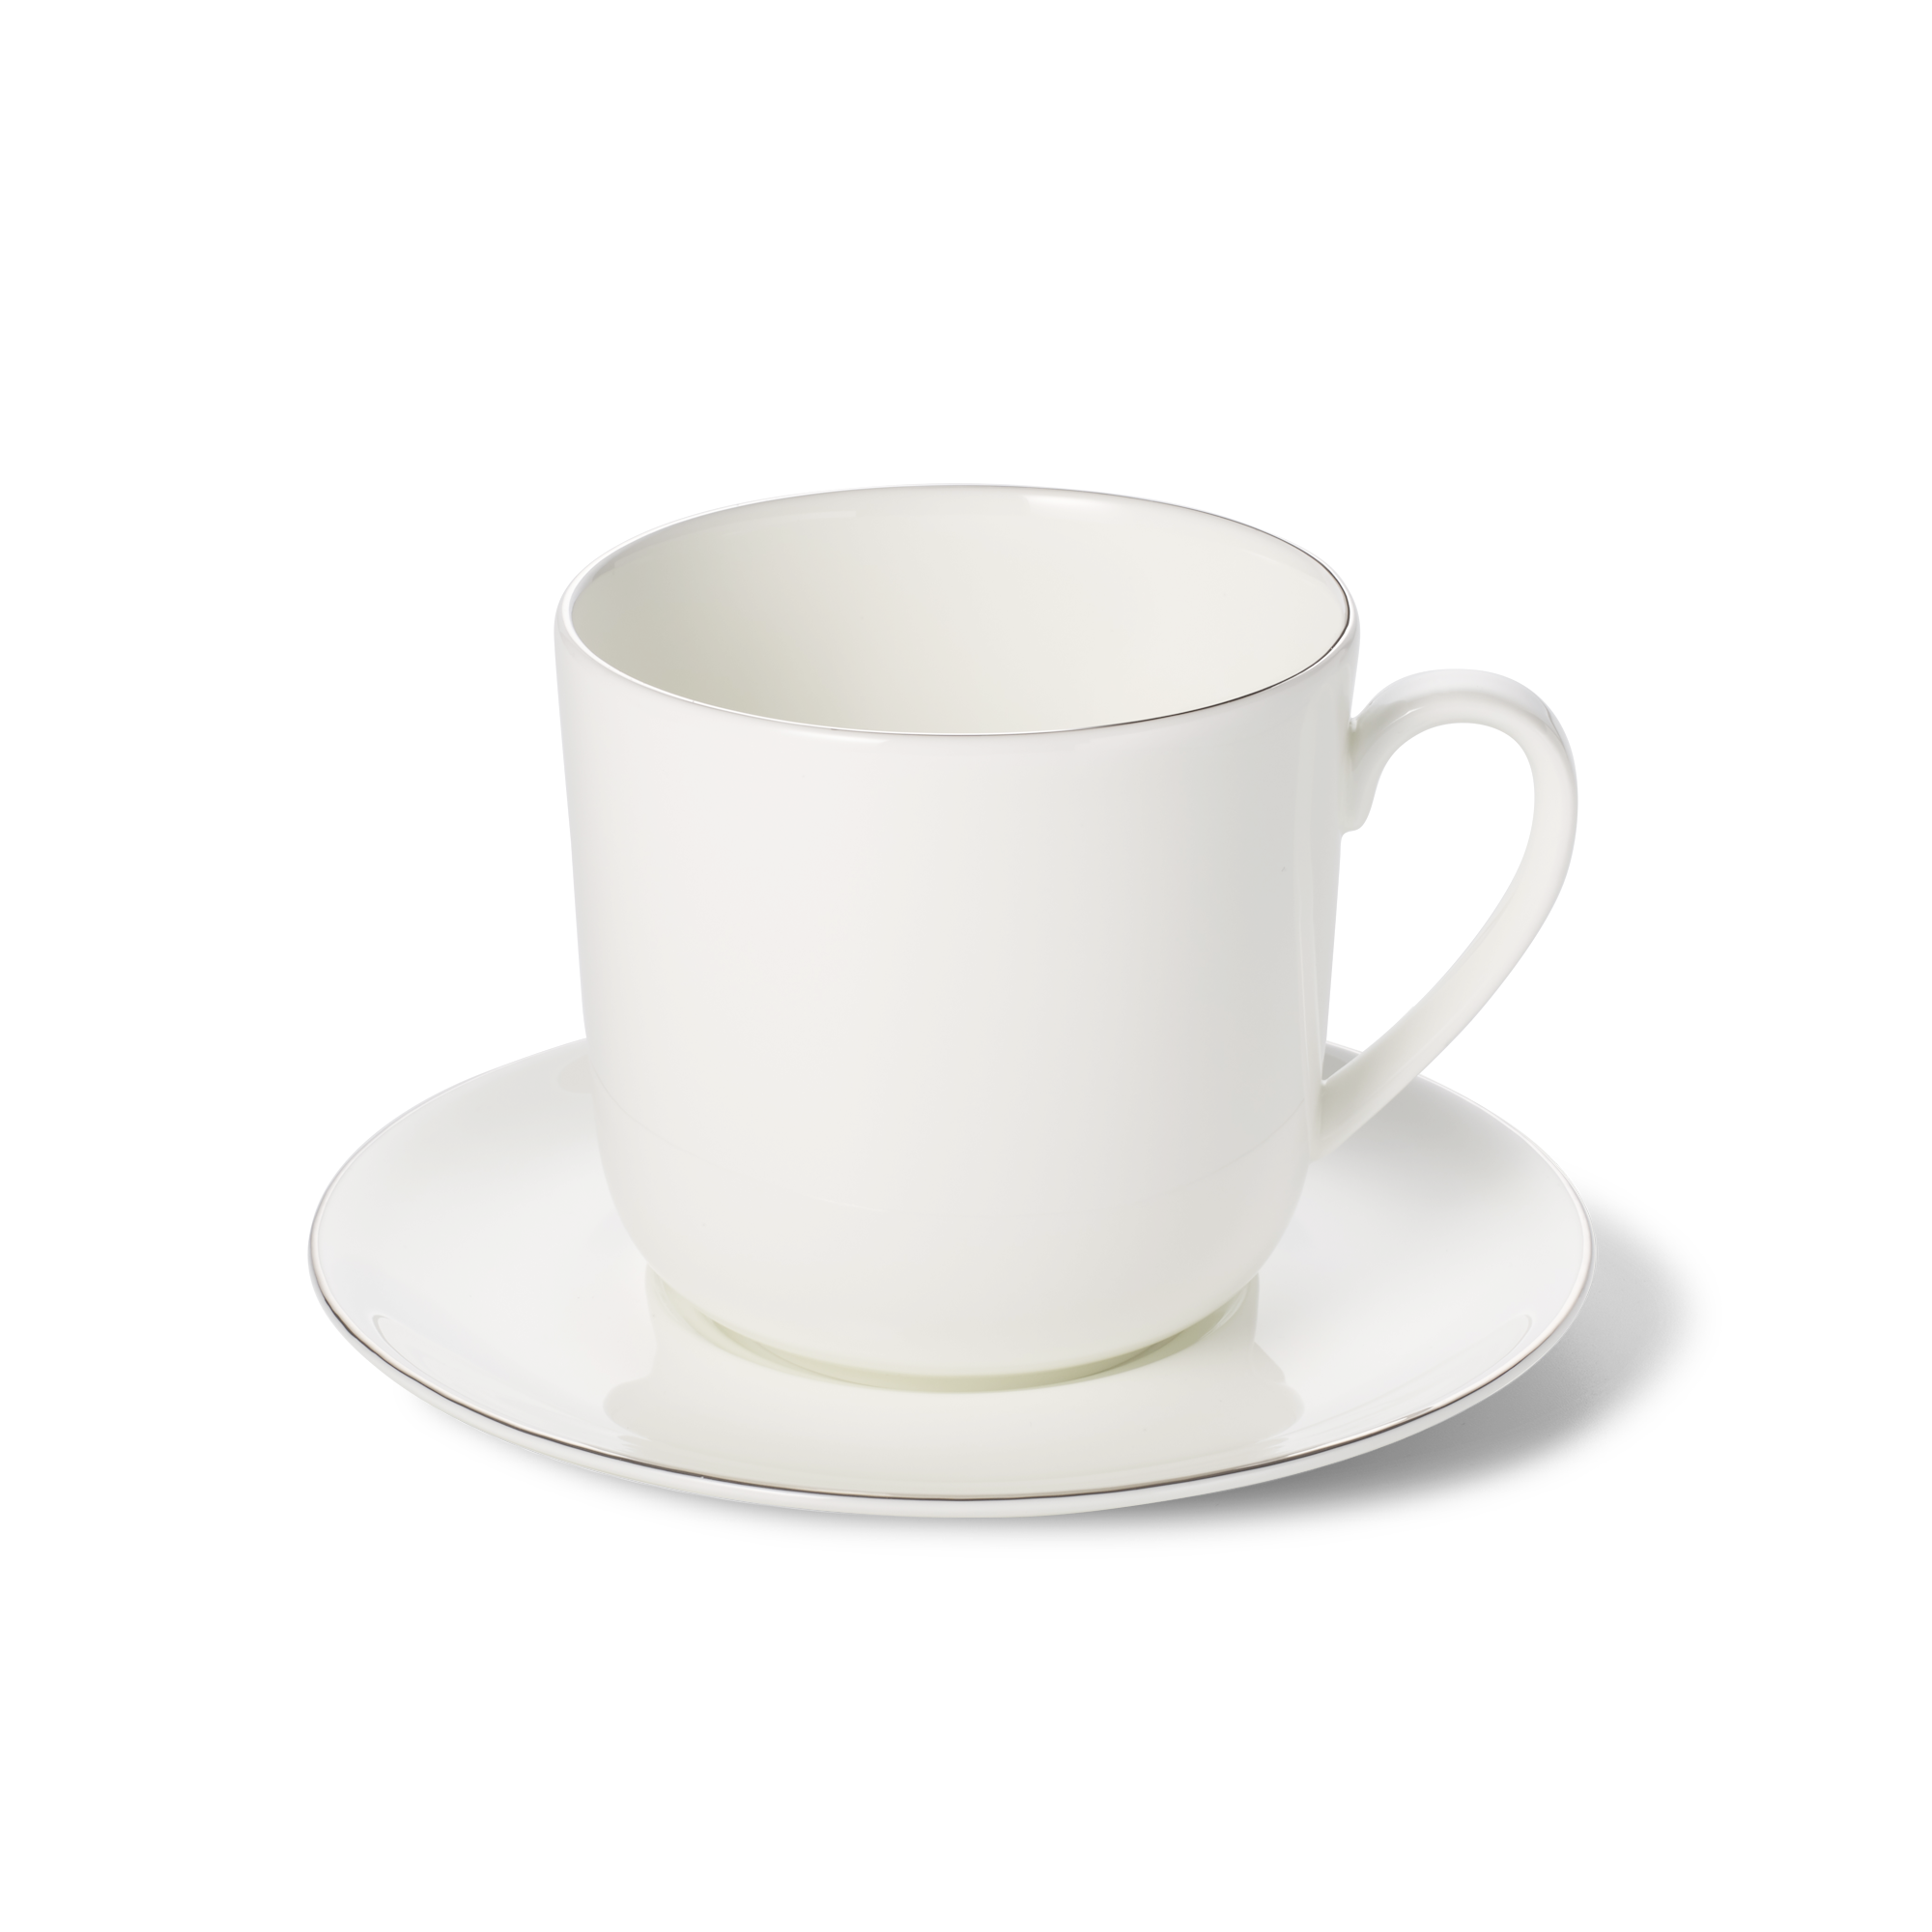 Platin Line mug with saucer